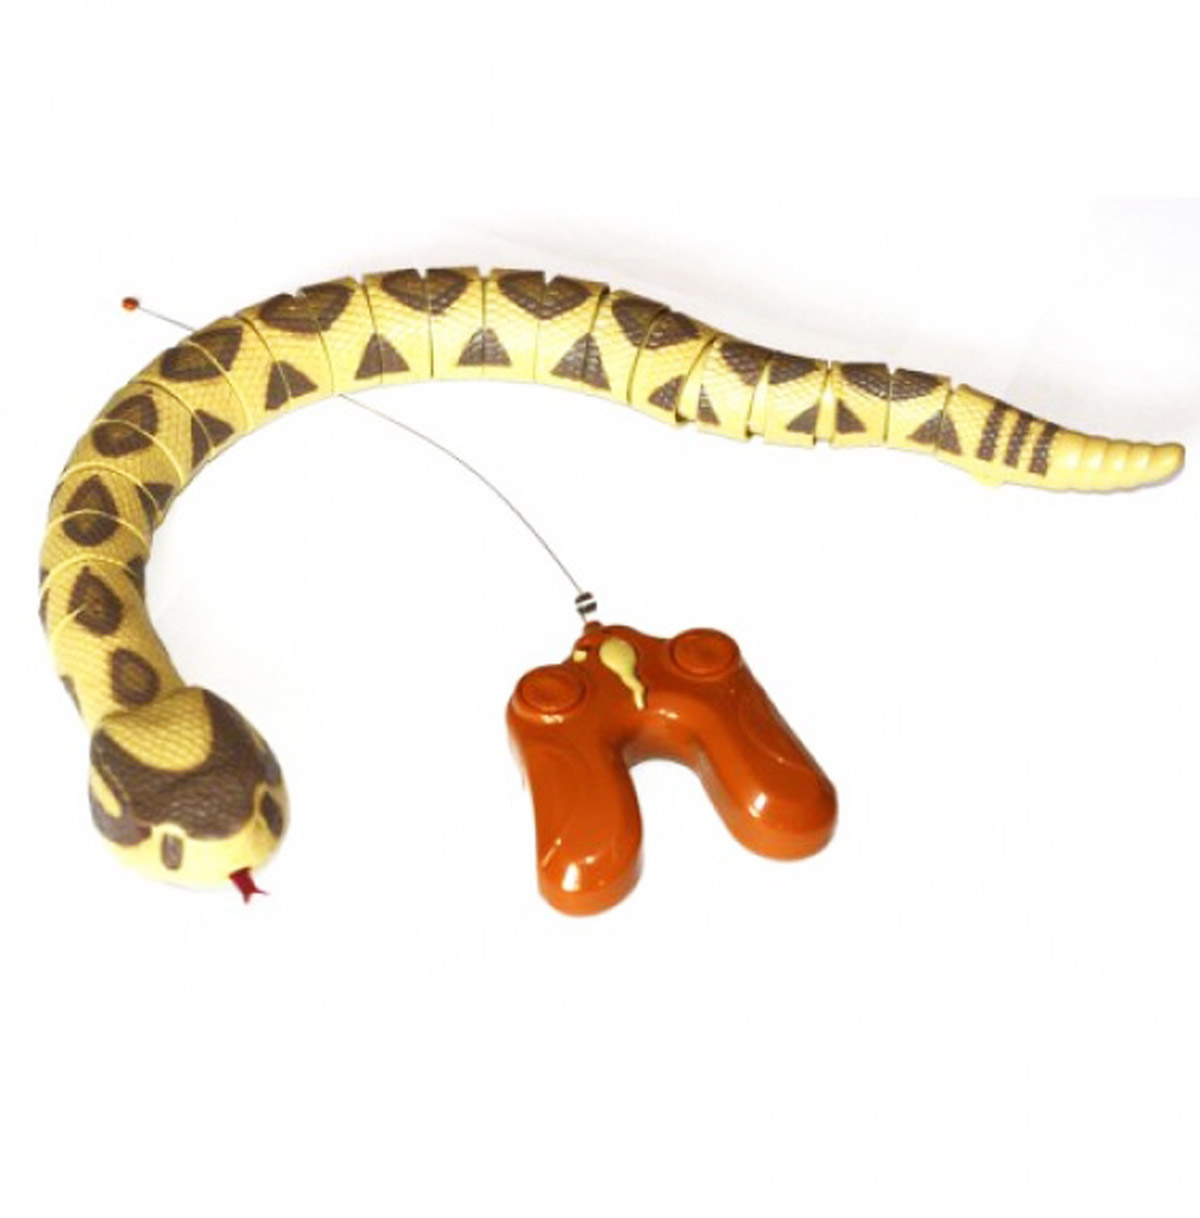 Іграшкова змія на радіокеруванні